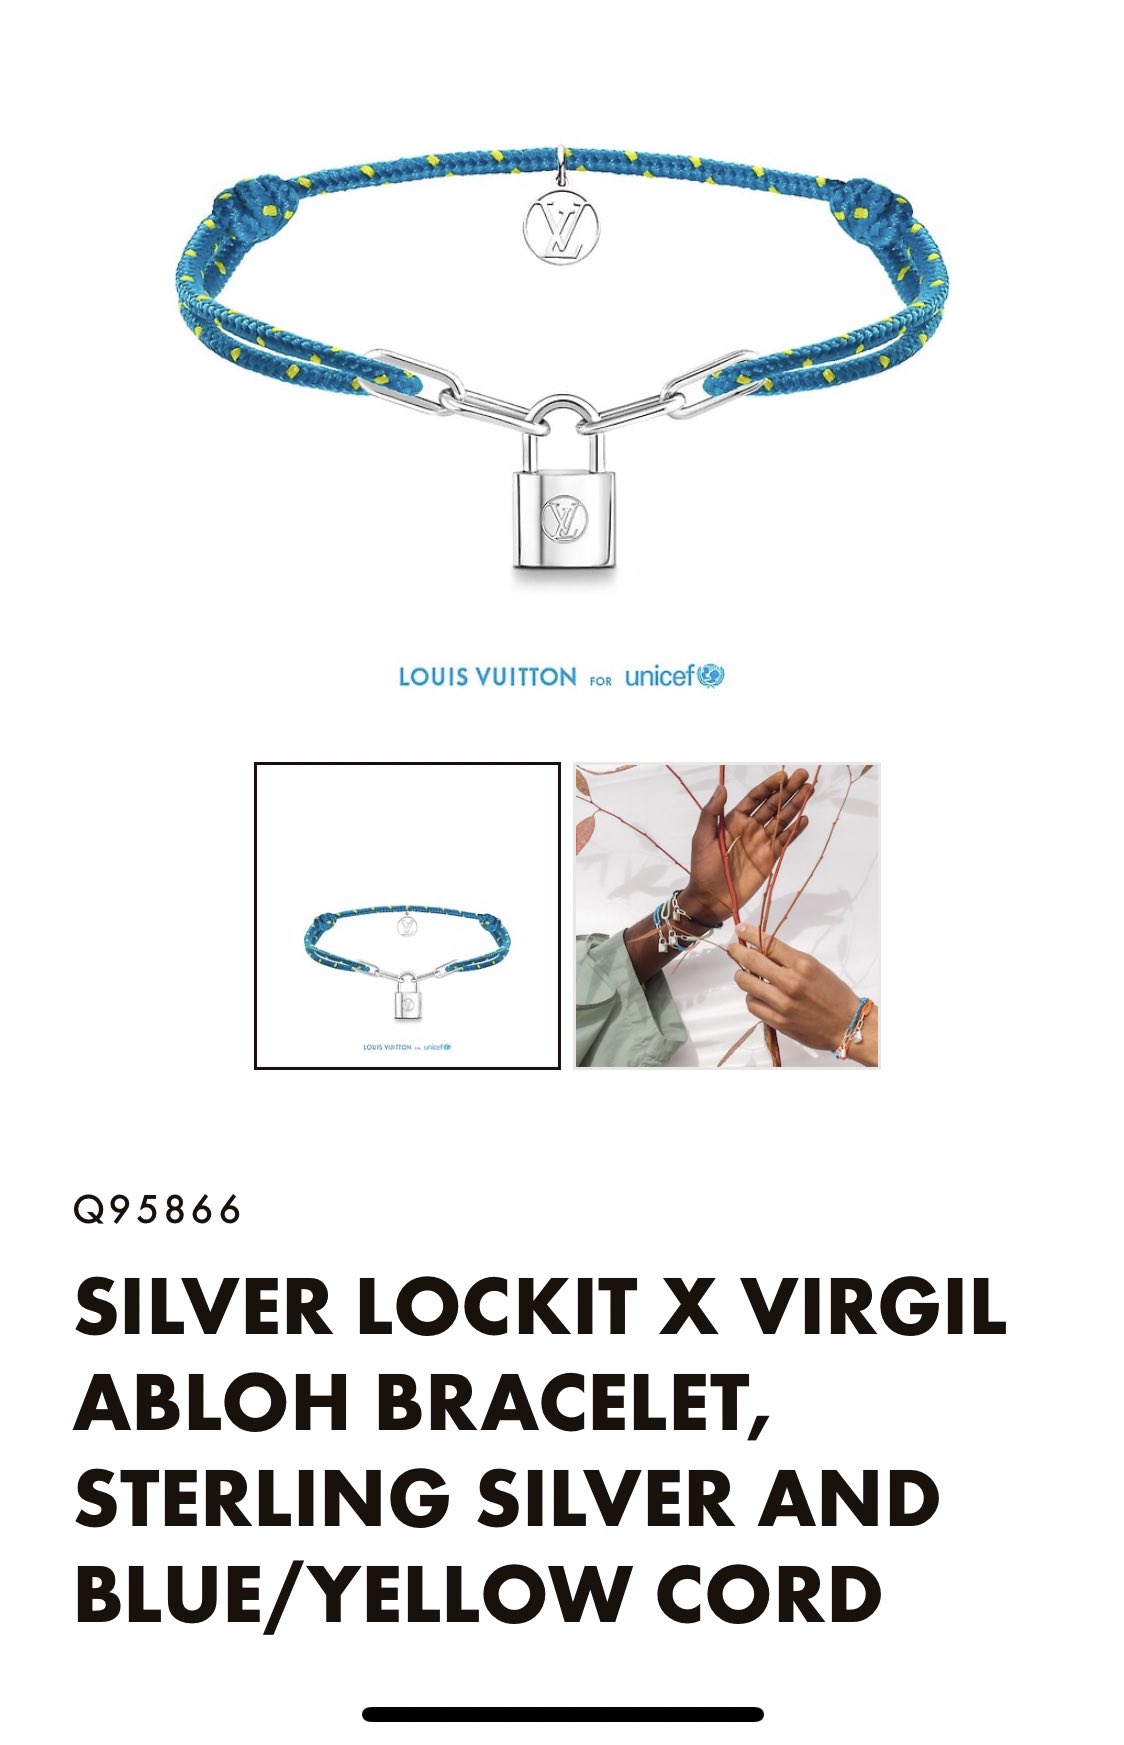 wenella x zhu yilong on X: On #ZhuYilong's wrist: #LouisVuitton for  #UNICEF Silver Lockit X Virgil Abloh bracelet  #朱一龙#朱一龍 / X